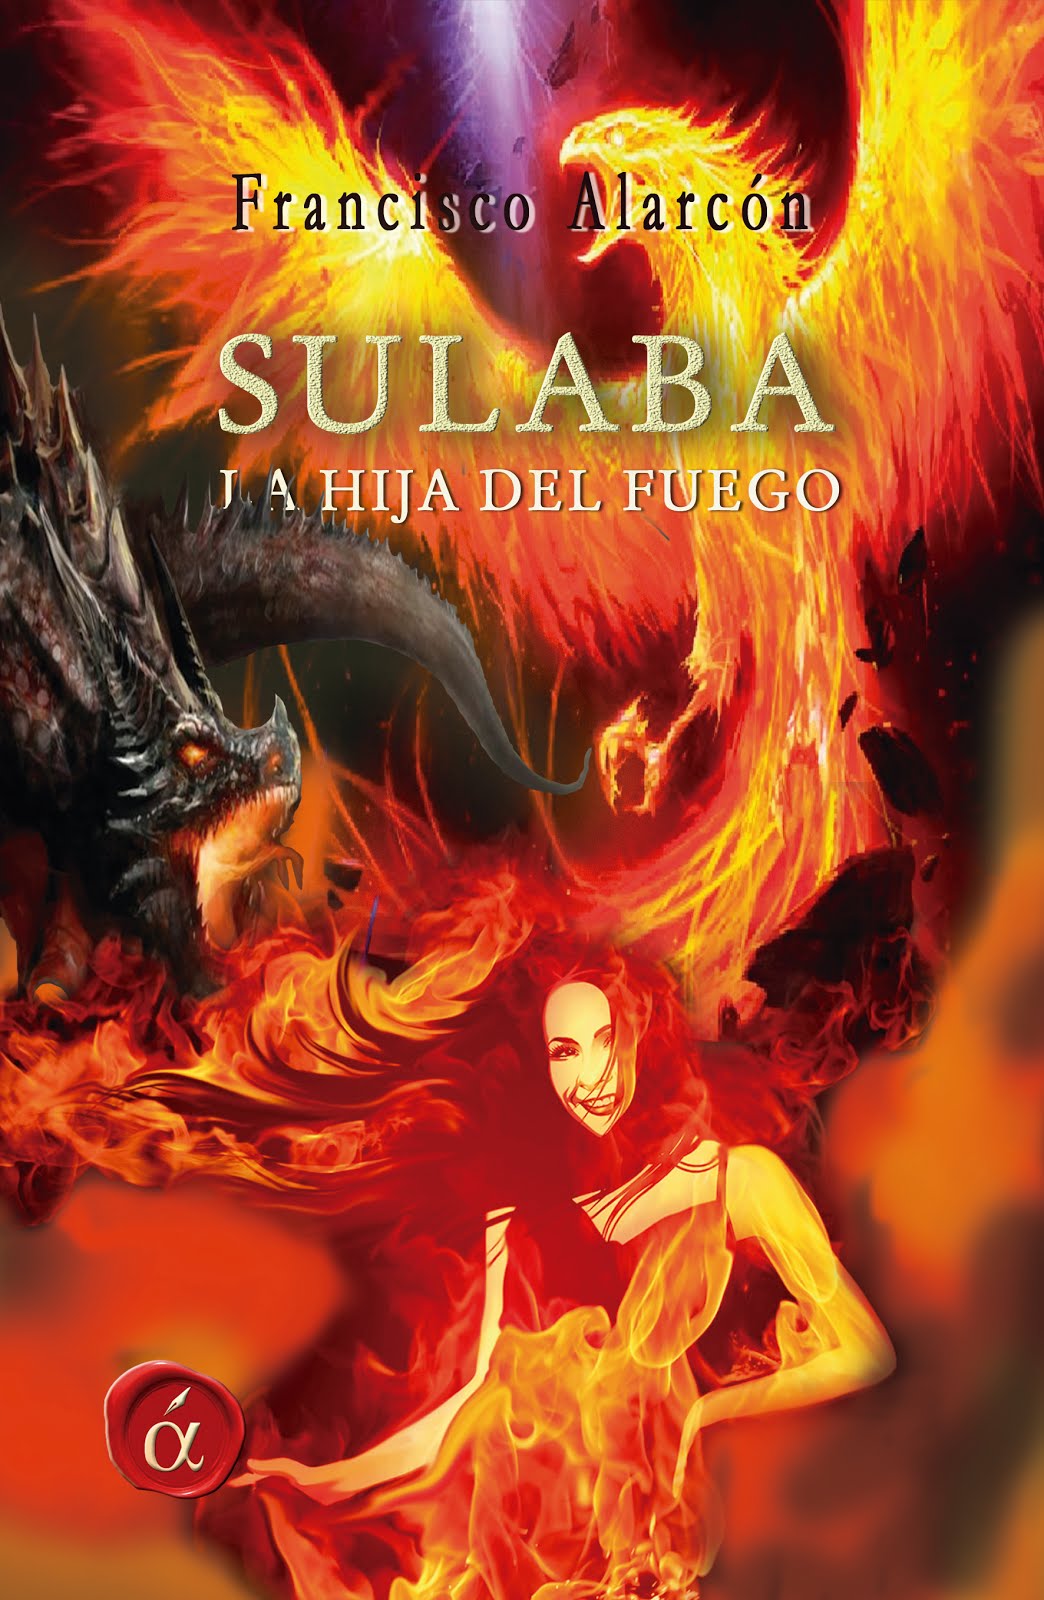 Sulaba, la hija del fuego